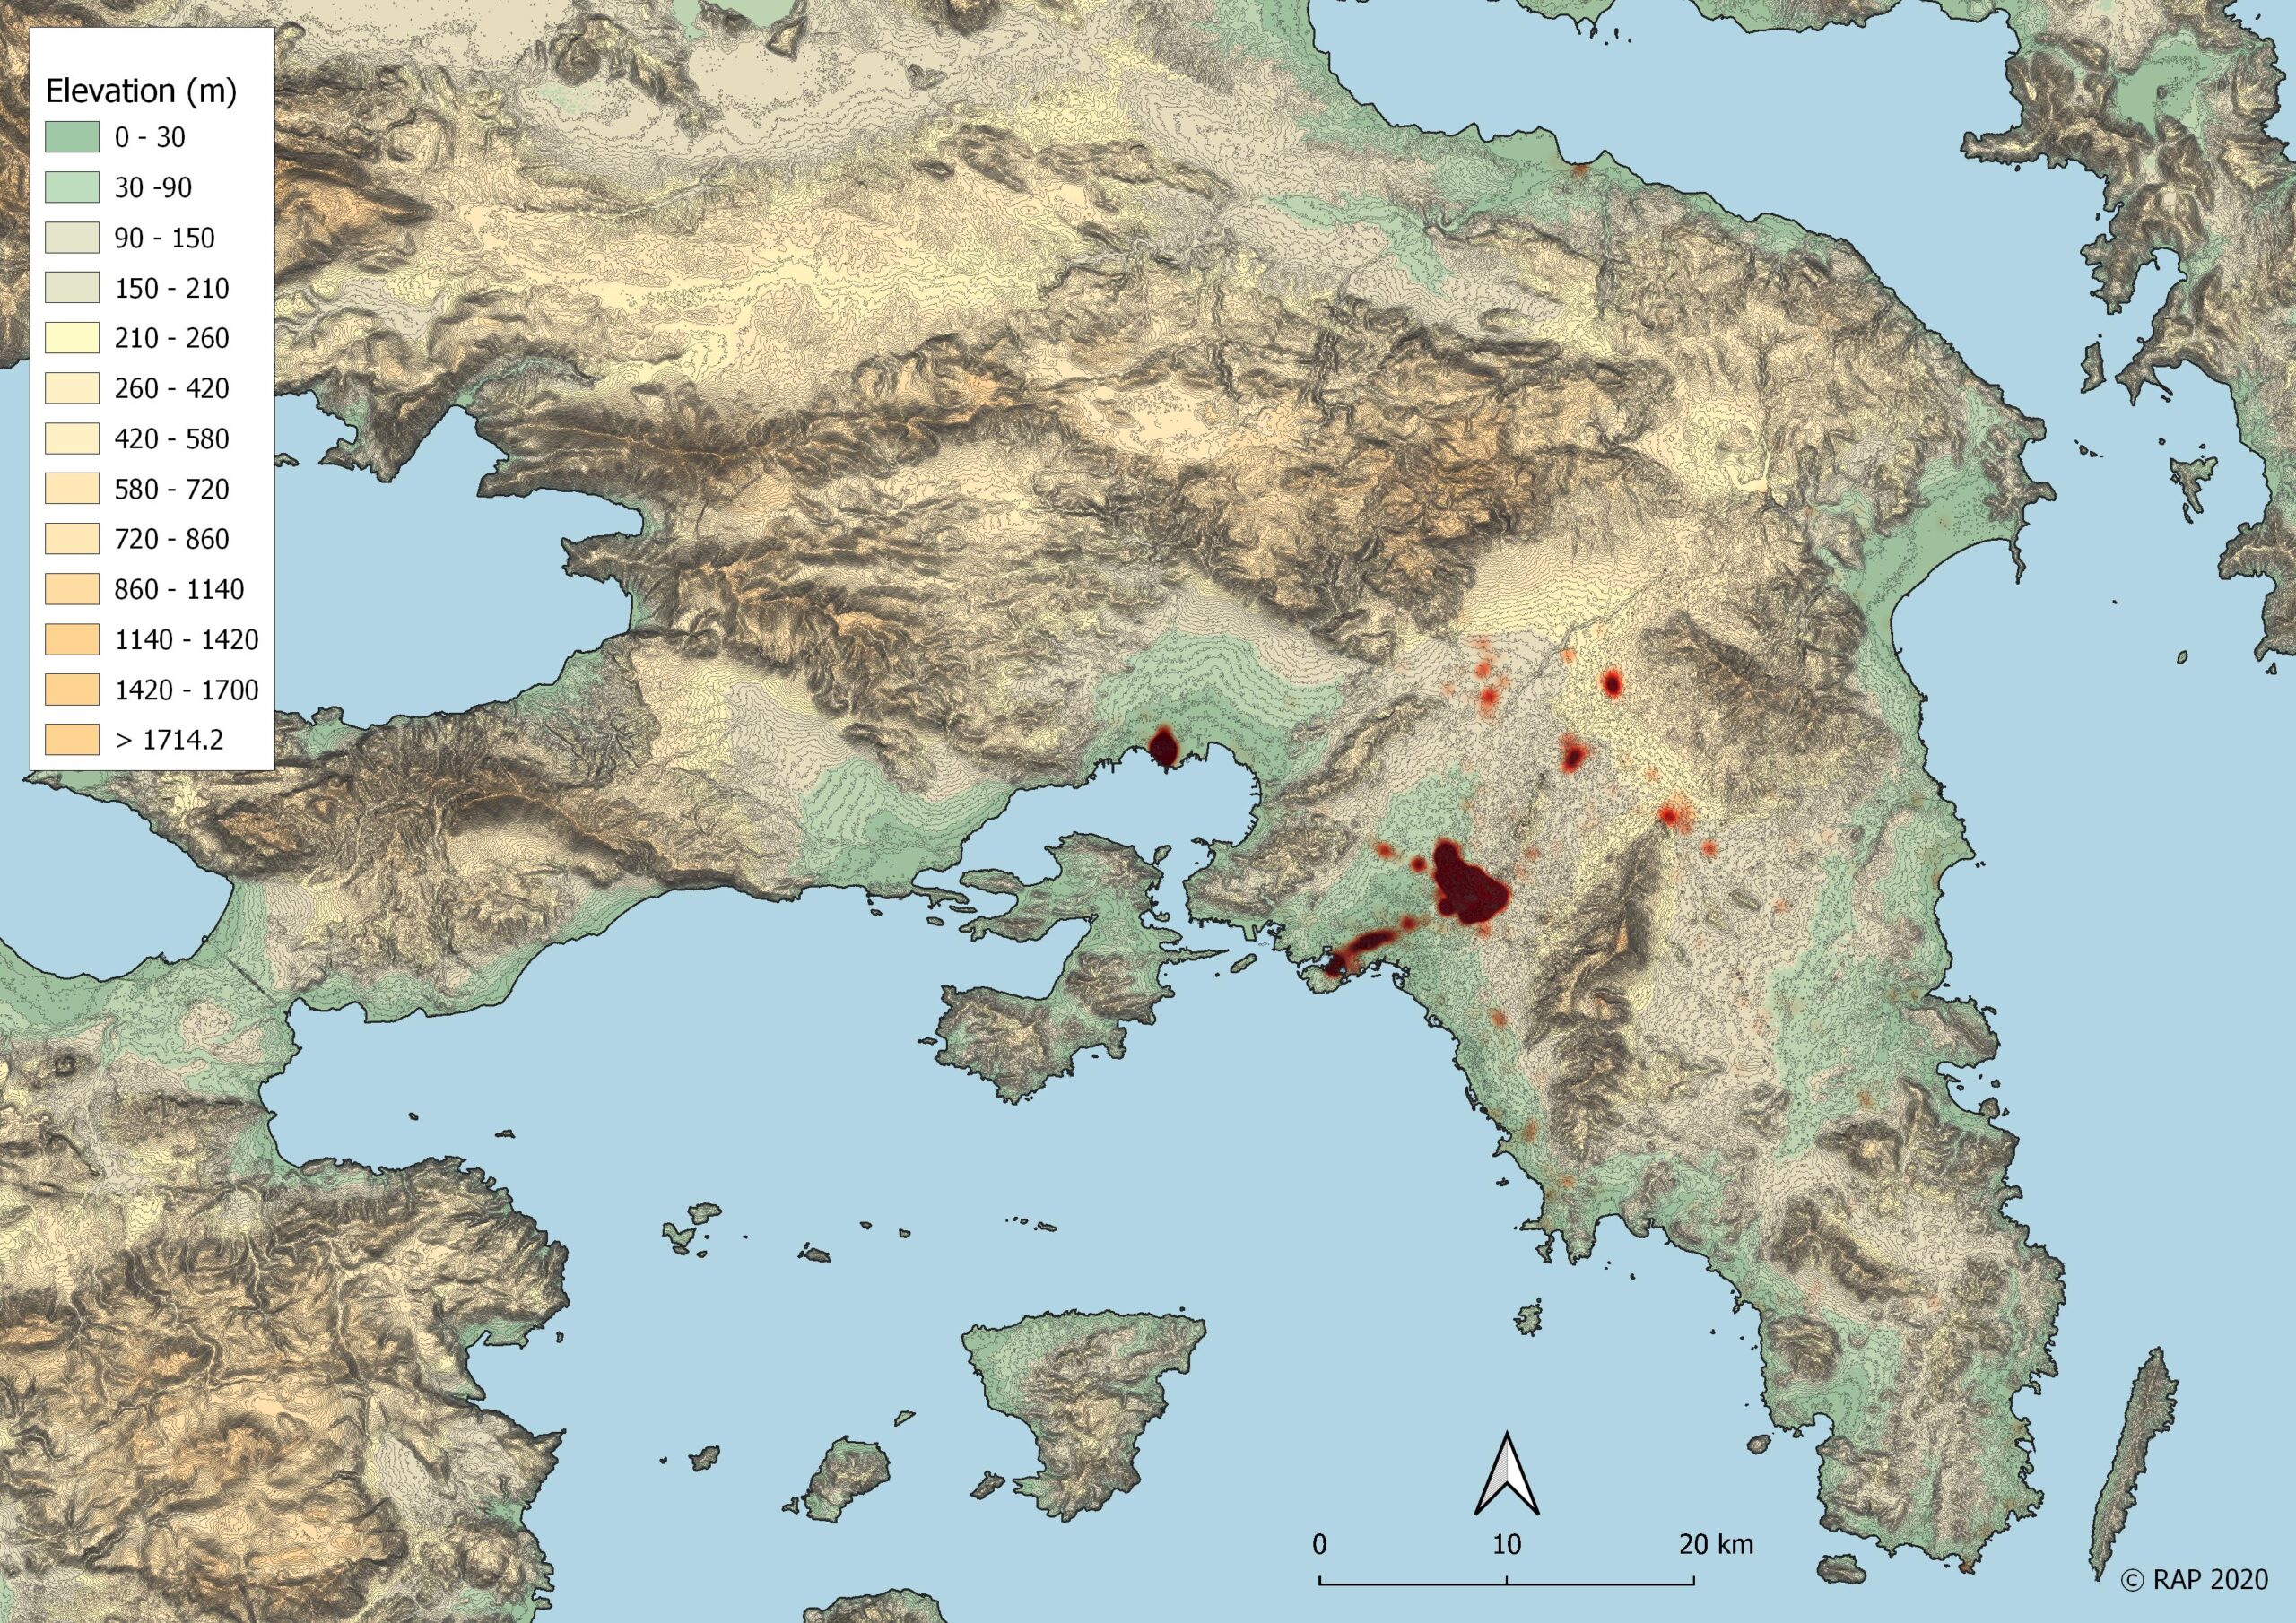 Χάρτης θερμότητας/συγκέντρωσης των ρωμαϊκών θέσεων στην Αττική